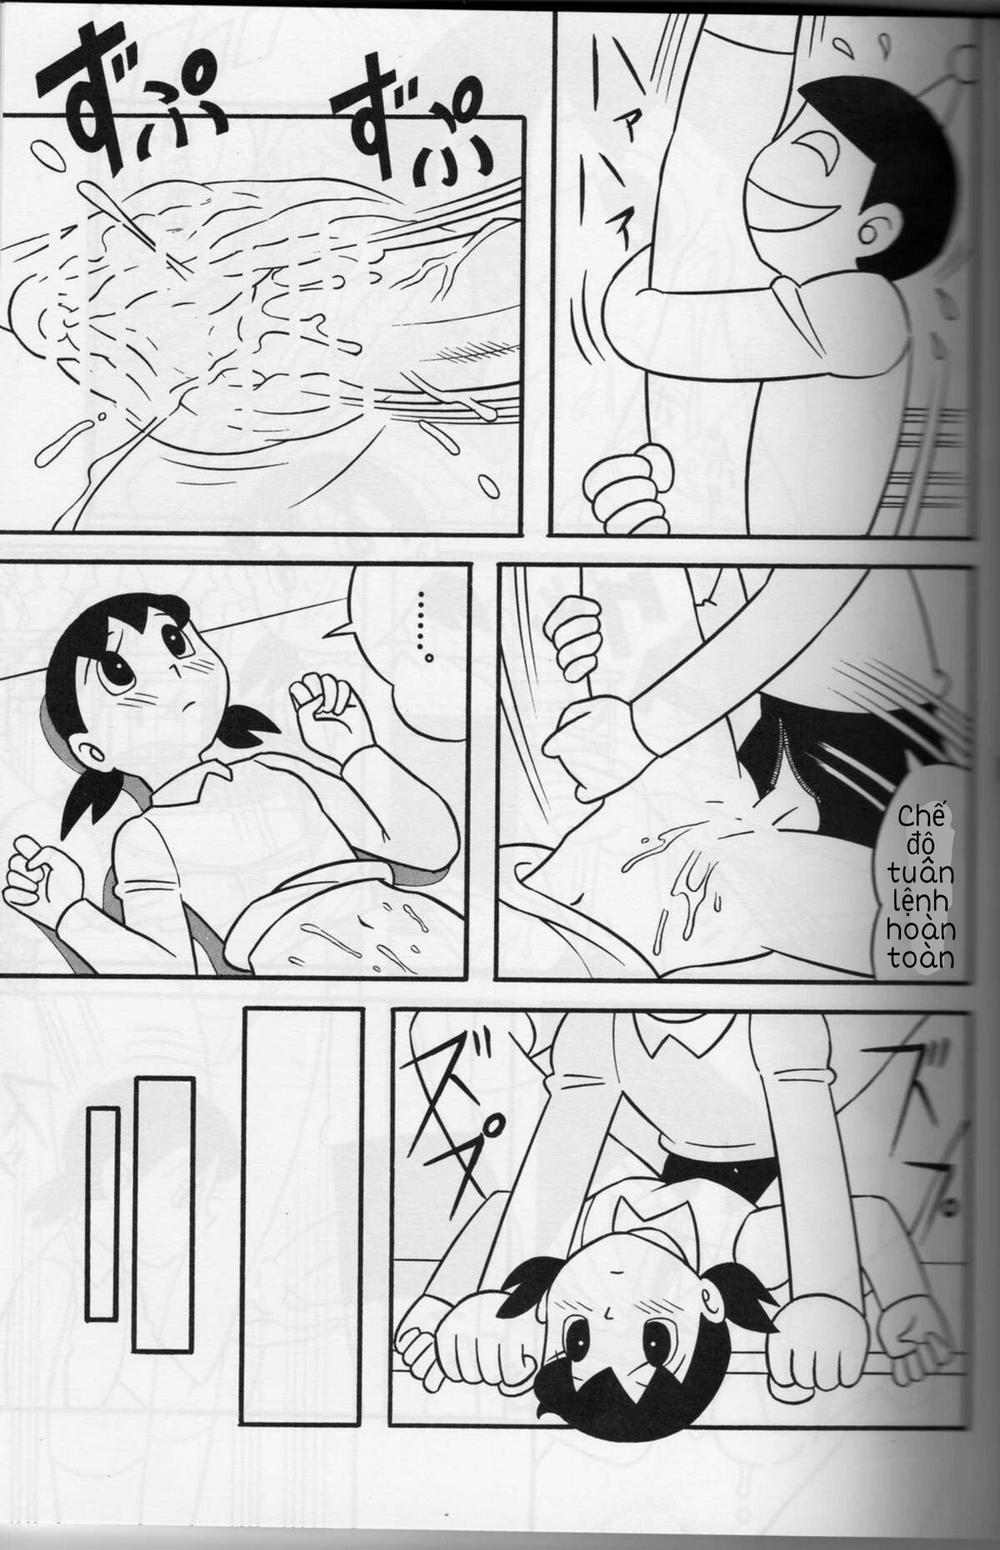 Tuyển Tập Doraemon Doujinshi 18+ Chương 1 M u c a t t c Trang 12